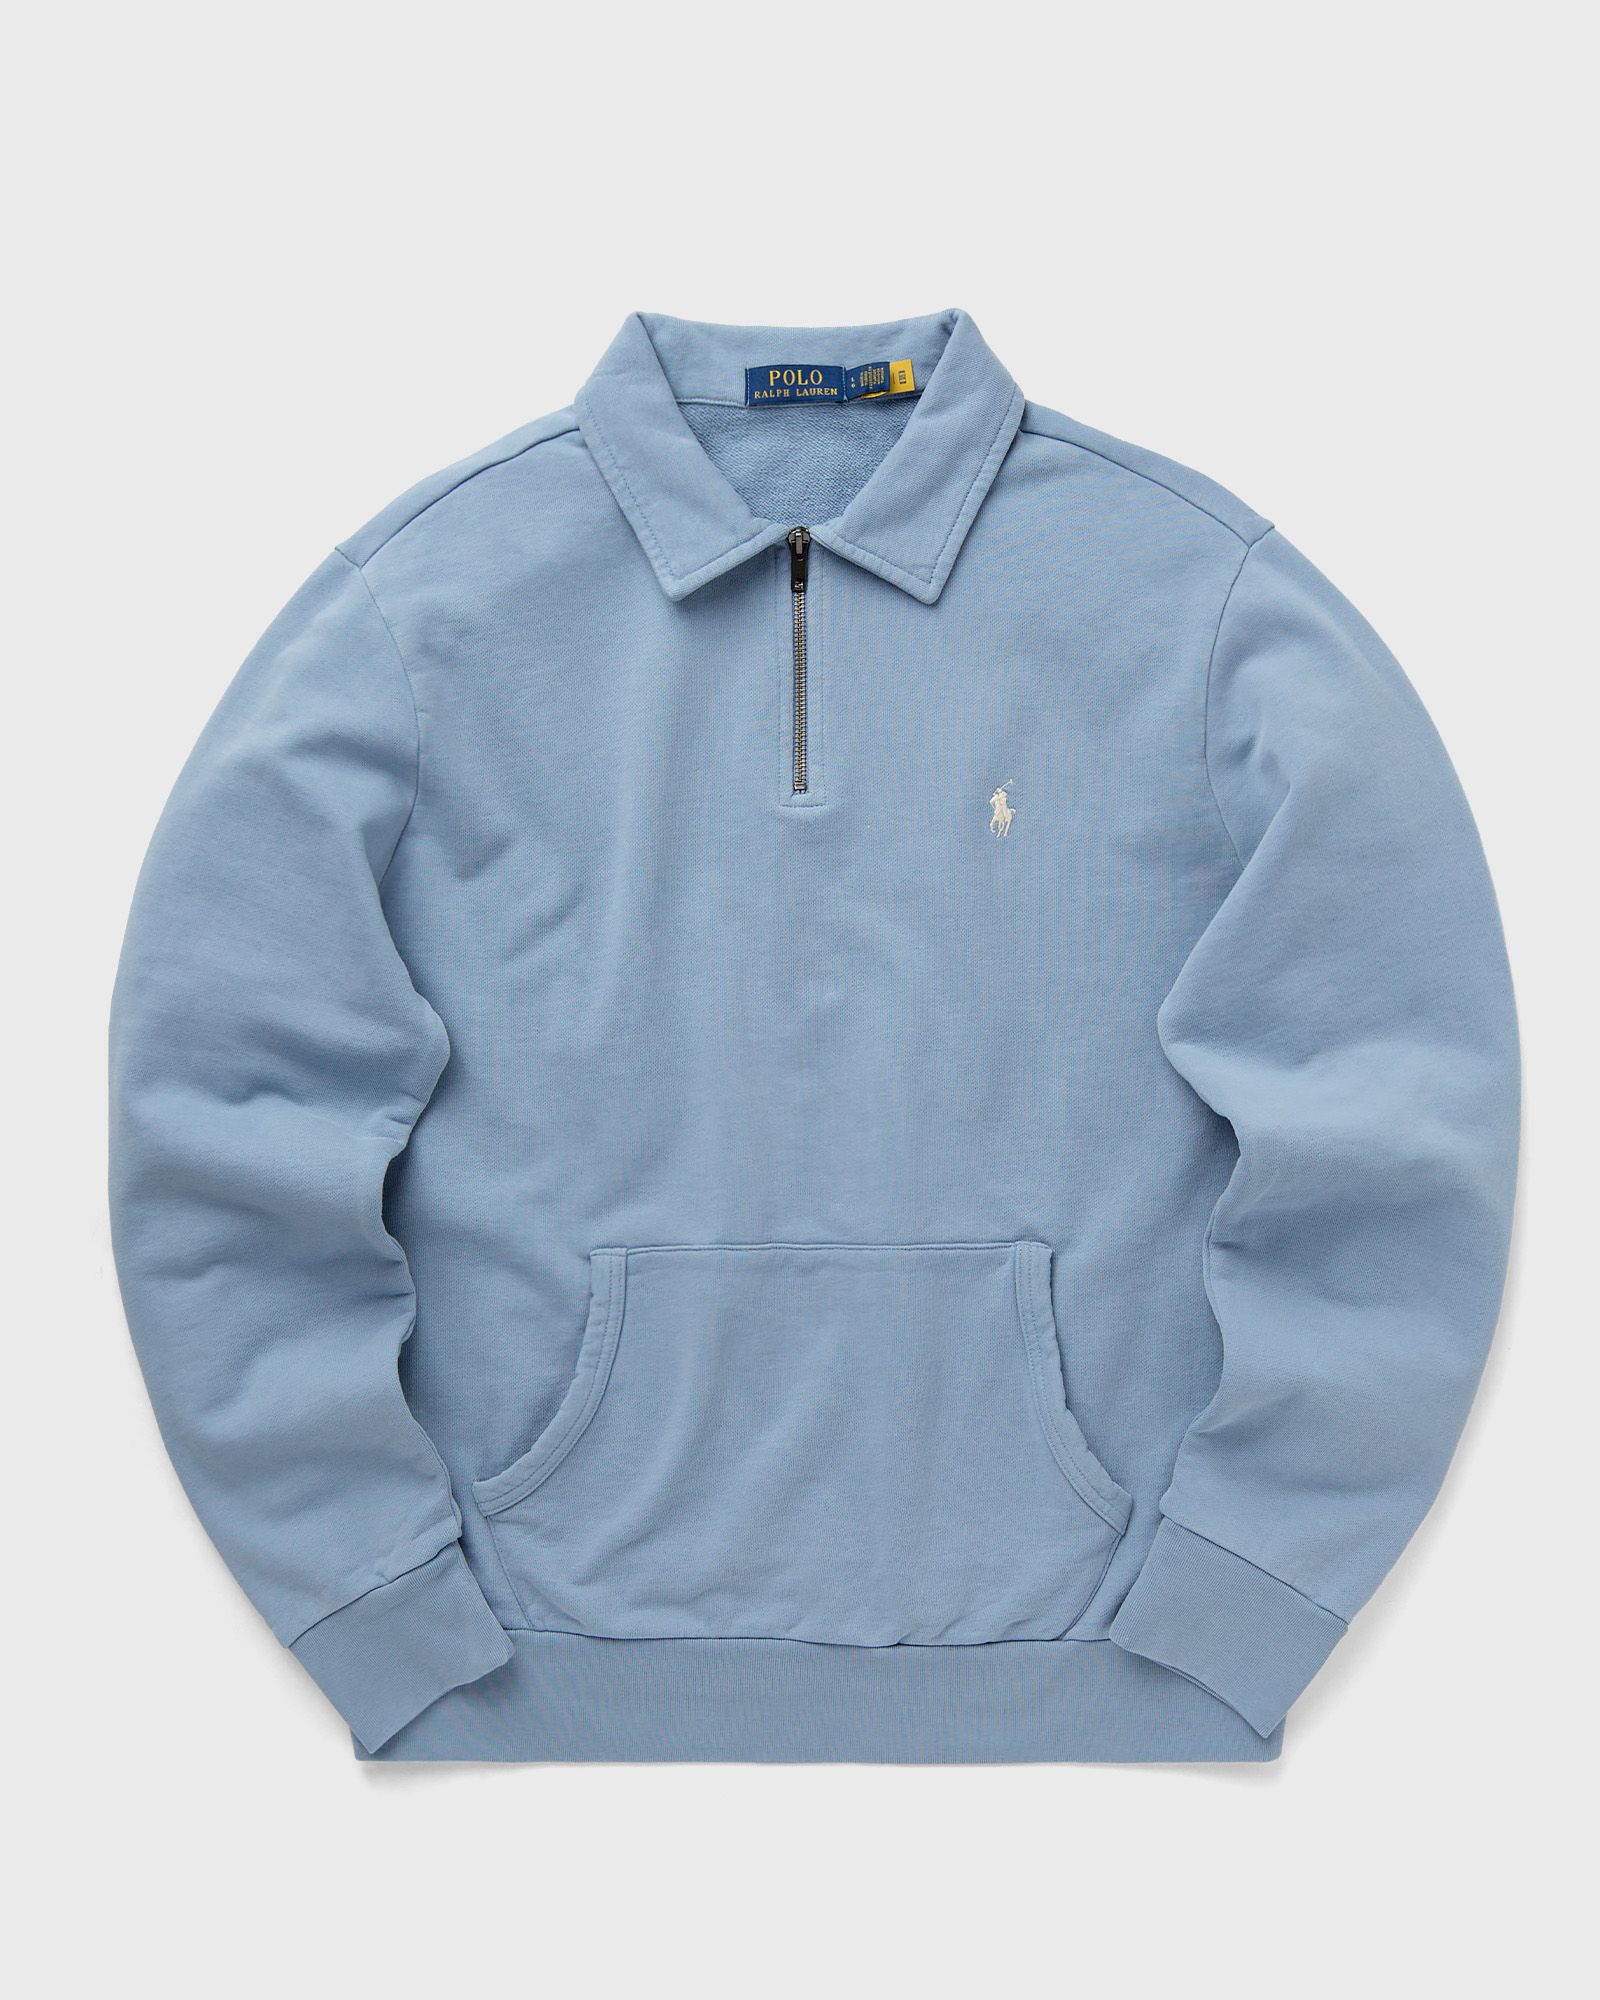 Polo Ralph Lauren - long sleeve-sweatshirt men half-zips blue in größe:xl